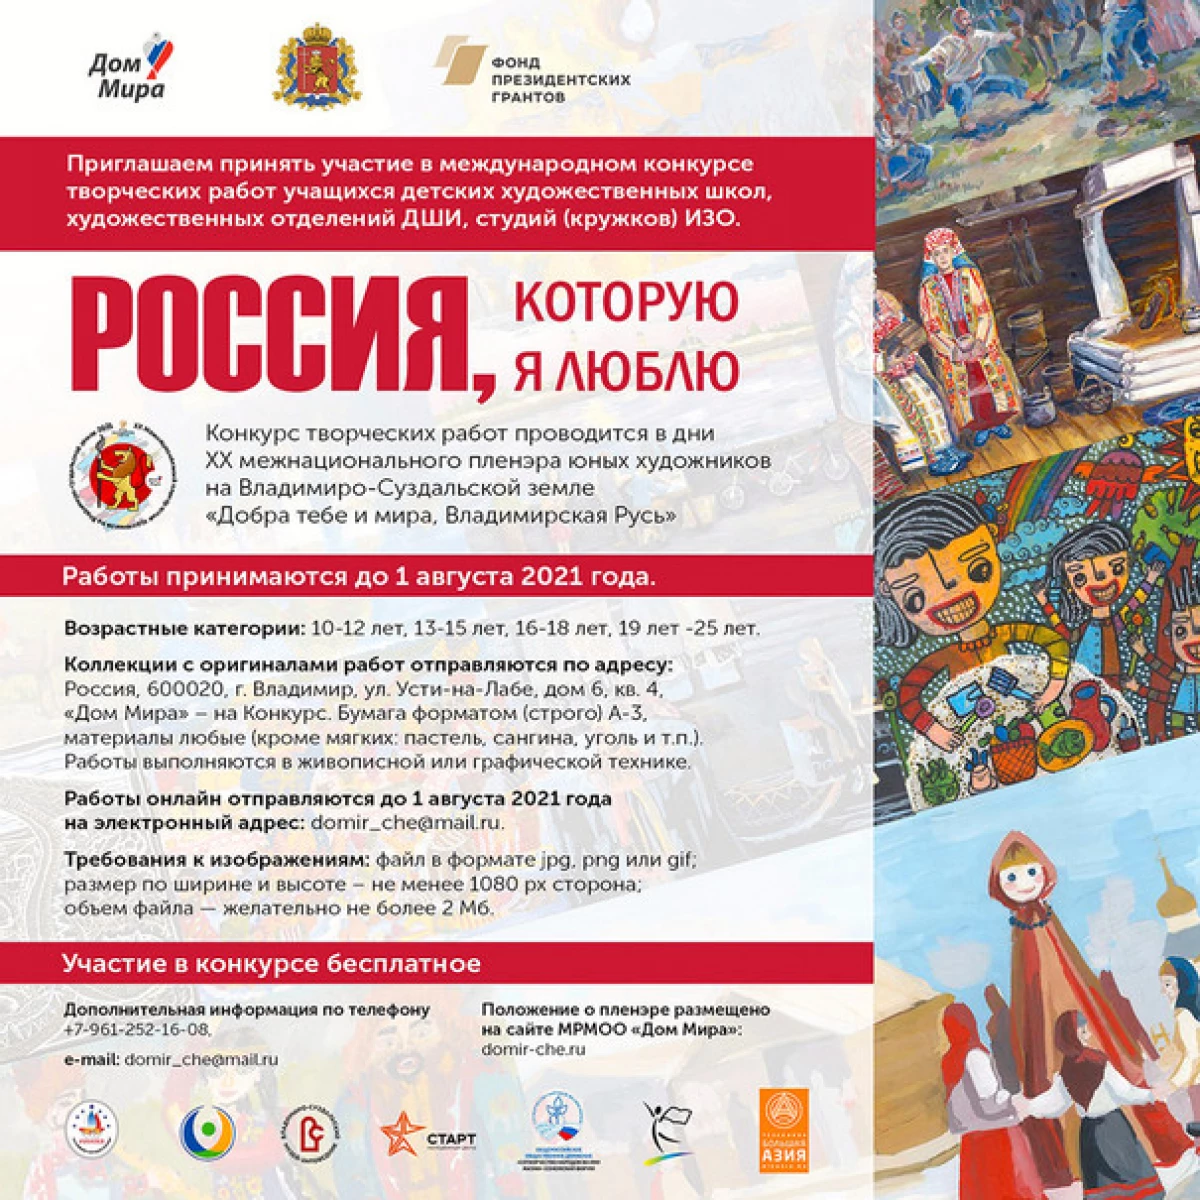 Երիտասարդ Վլադիմիրի նկարիչները հրավիրում են մասնակցել «Ռուսաստան գիտեմ» լիազորին 21557_2